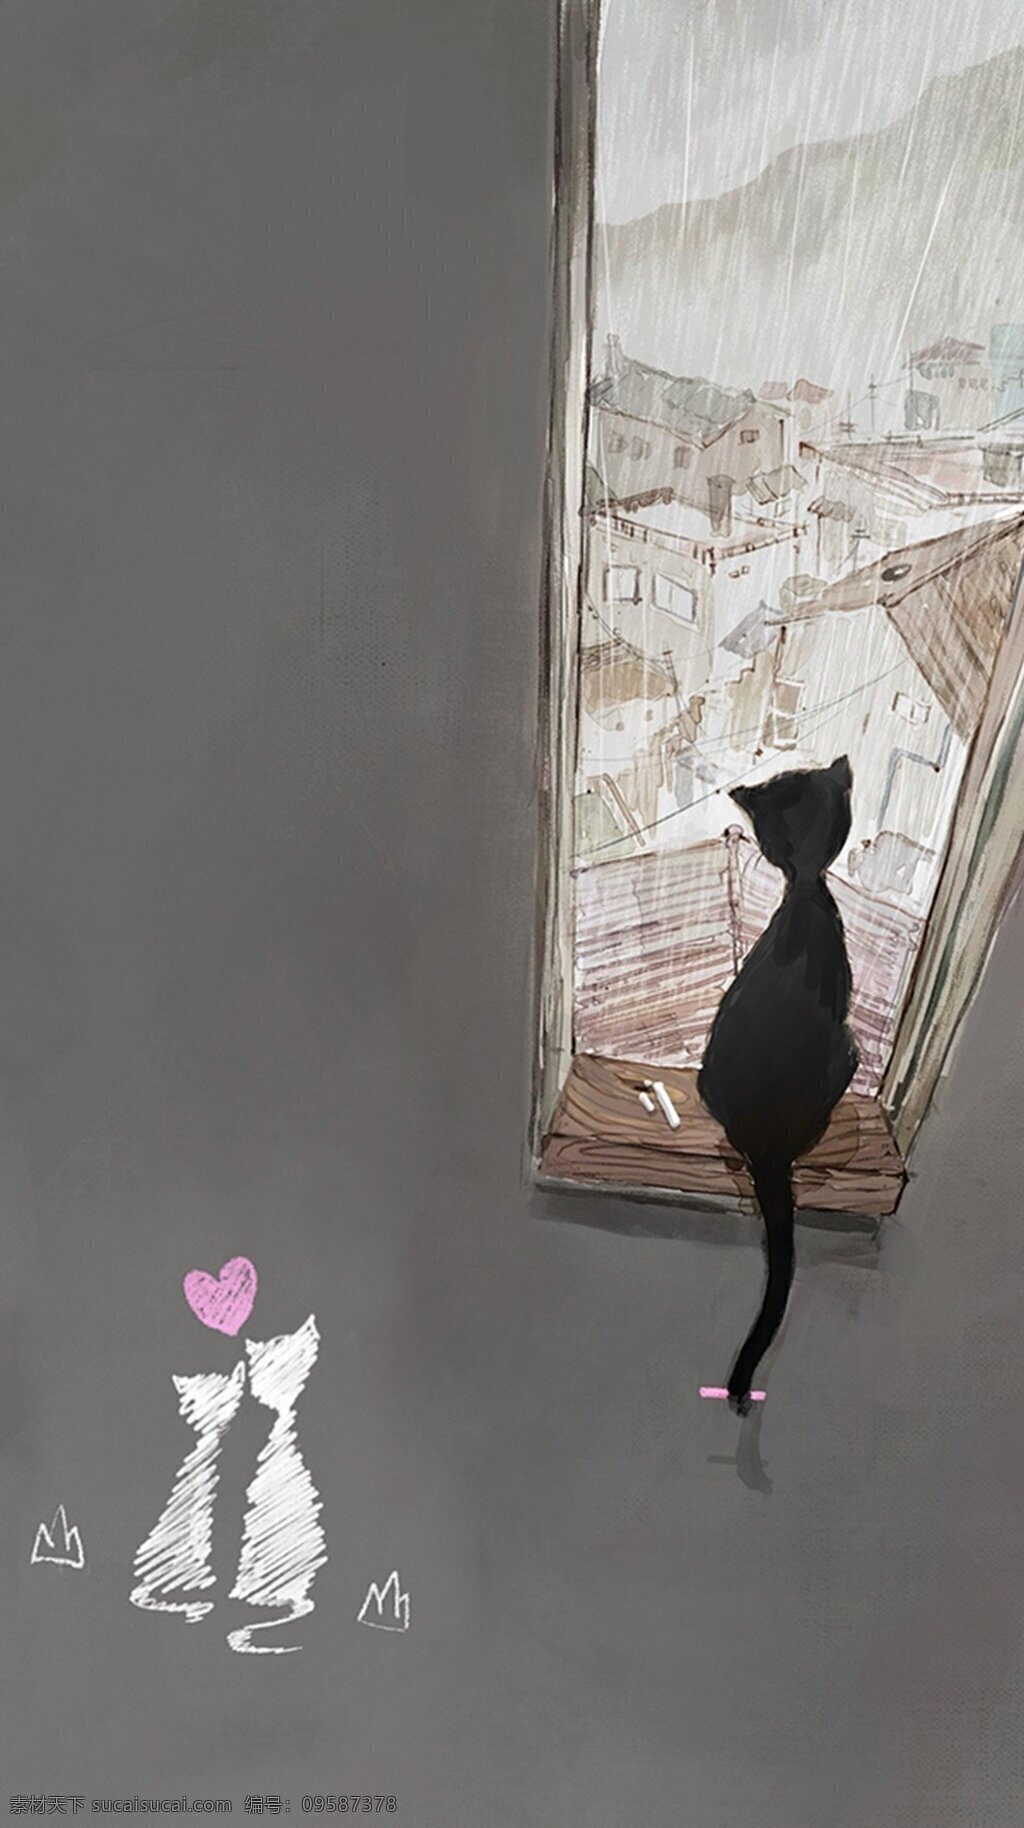 雨夜 里 倚坐 窗 猫 简约 可爱 清新 壁纸 背景 海报 宣传 灰色